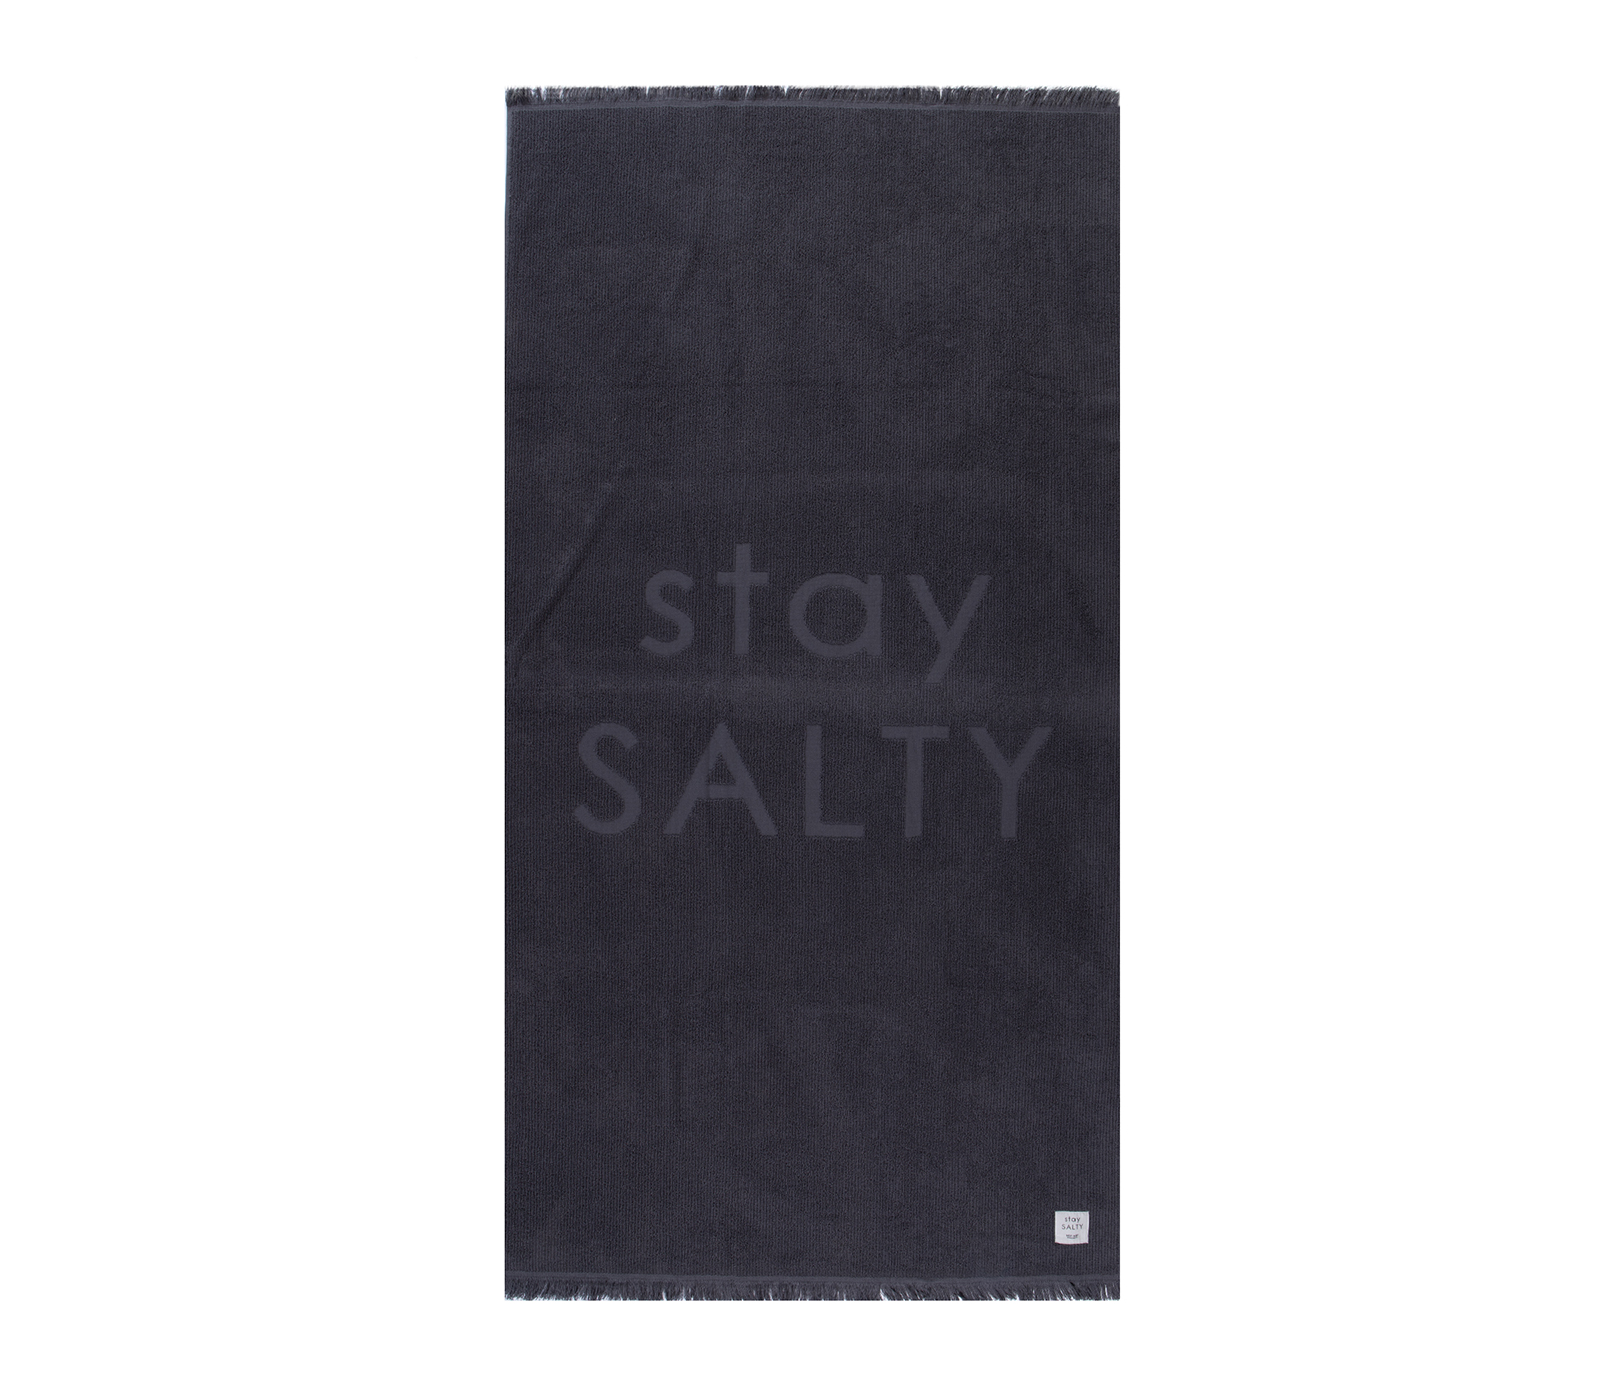 Πετσέτα Θαλάσσης Nef-Nef Stay Salty 90X170 Grey 